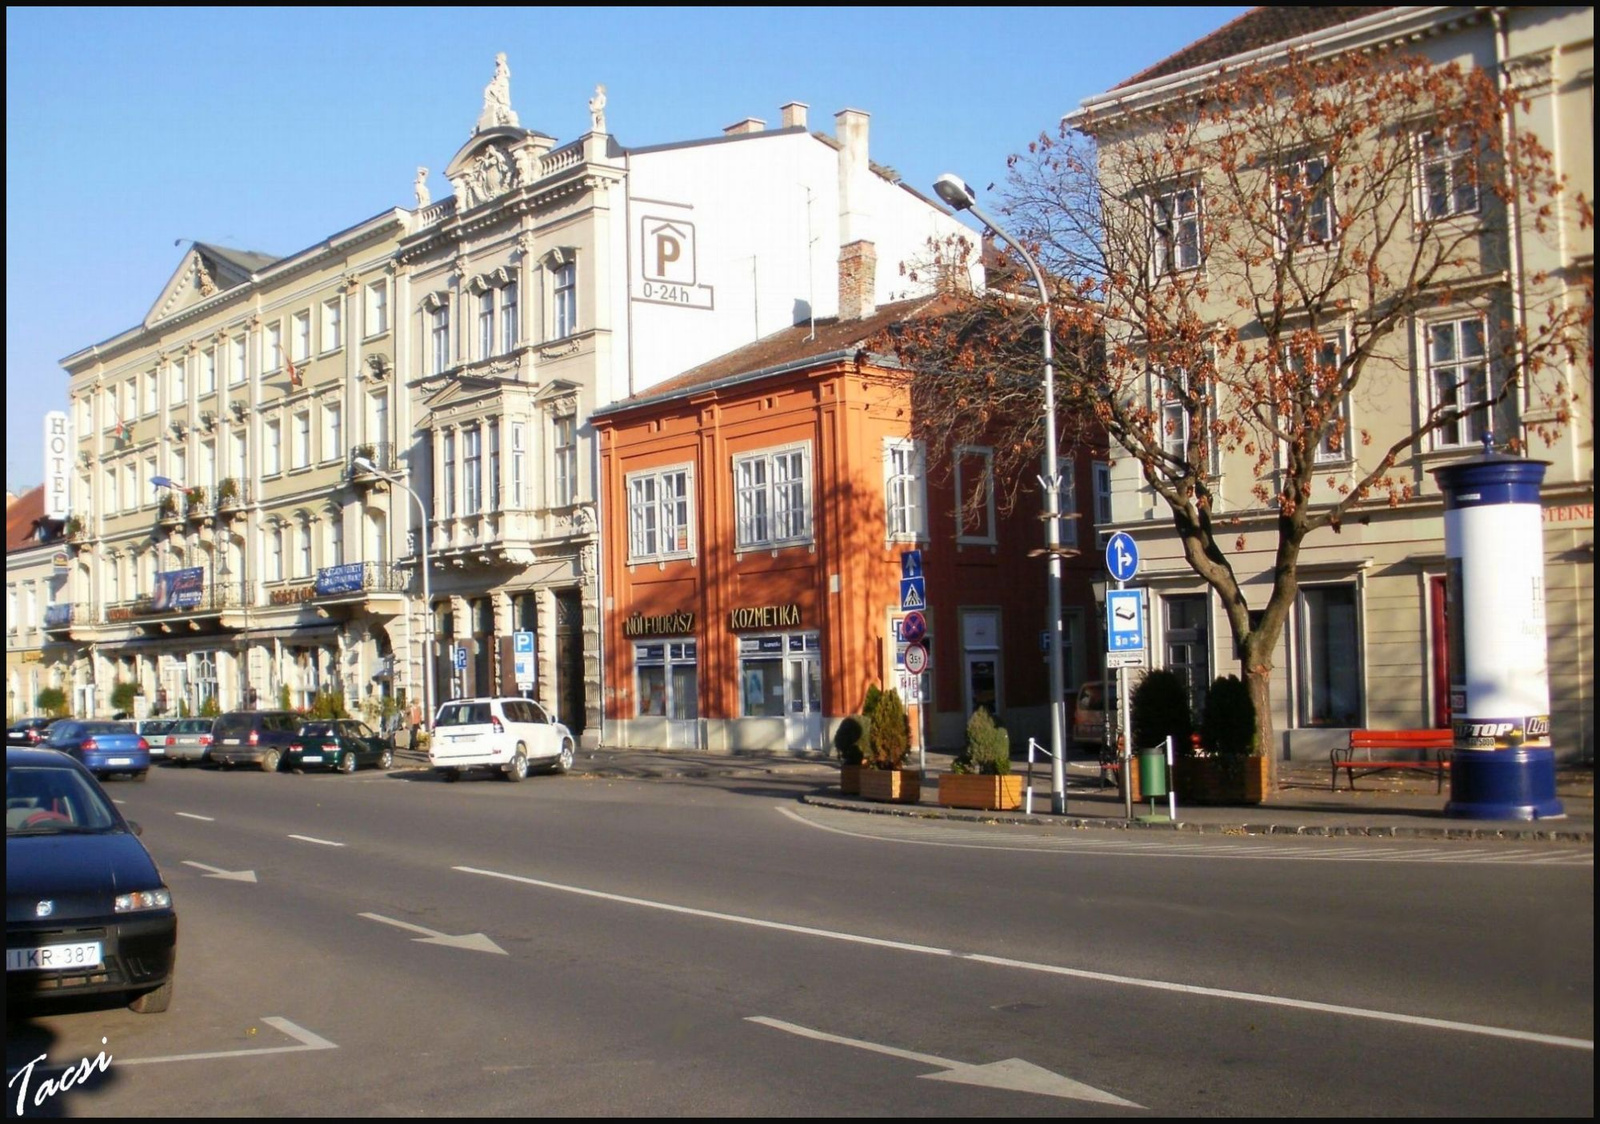 Torna utca bejárata és a Pannónia szálló